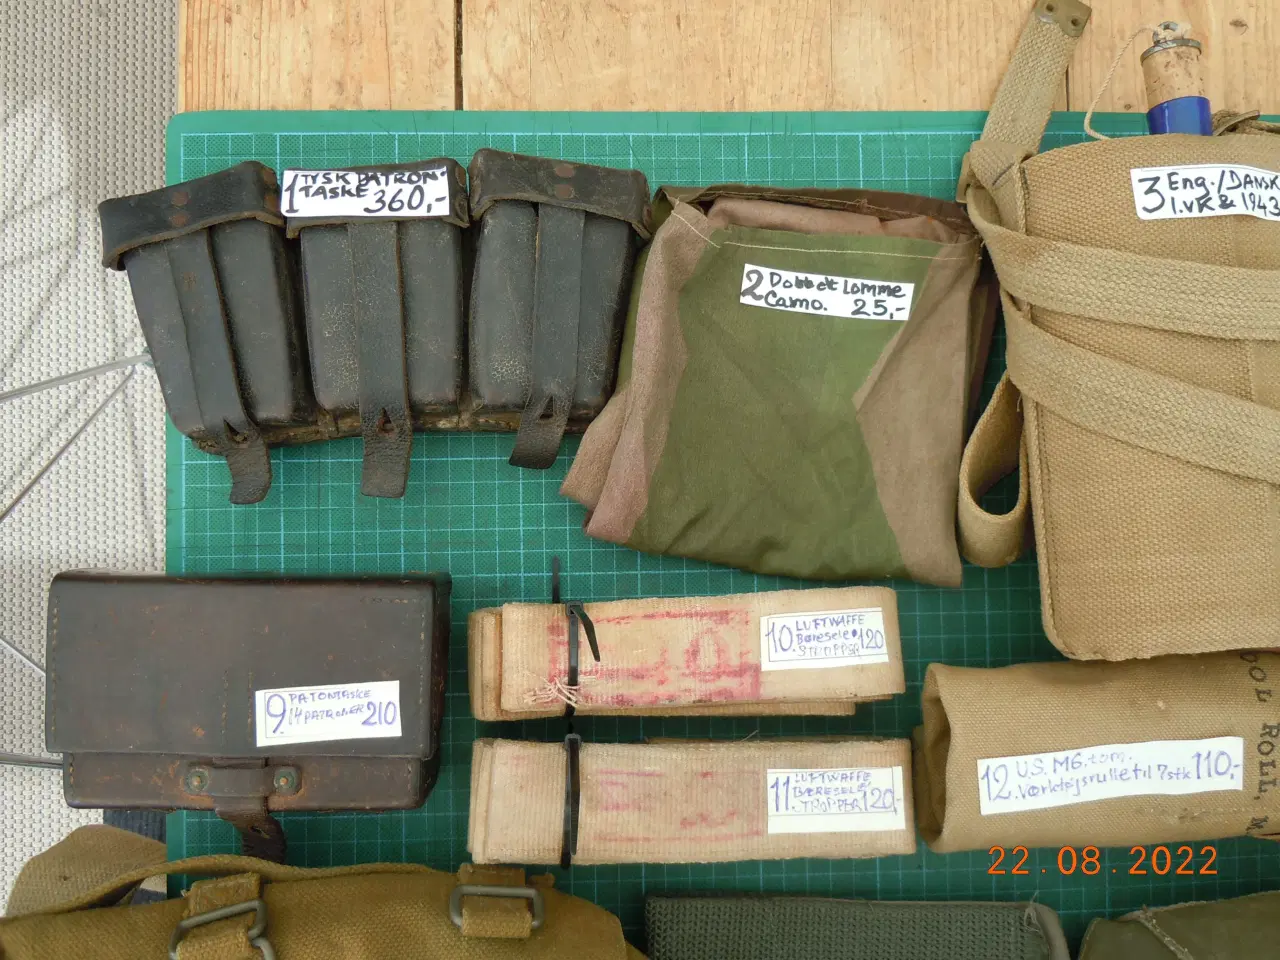 Billede 2 - Patrontasker. Andre militære tasker.